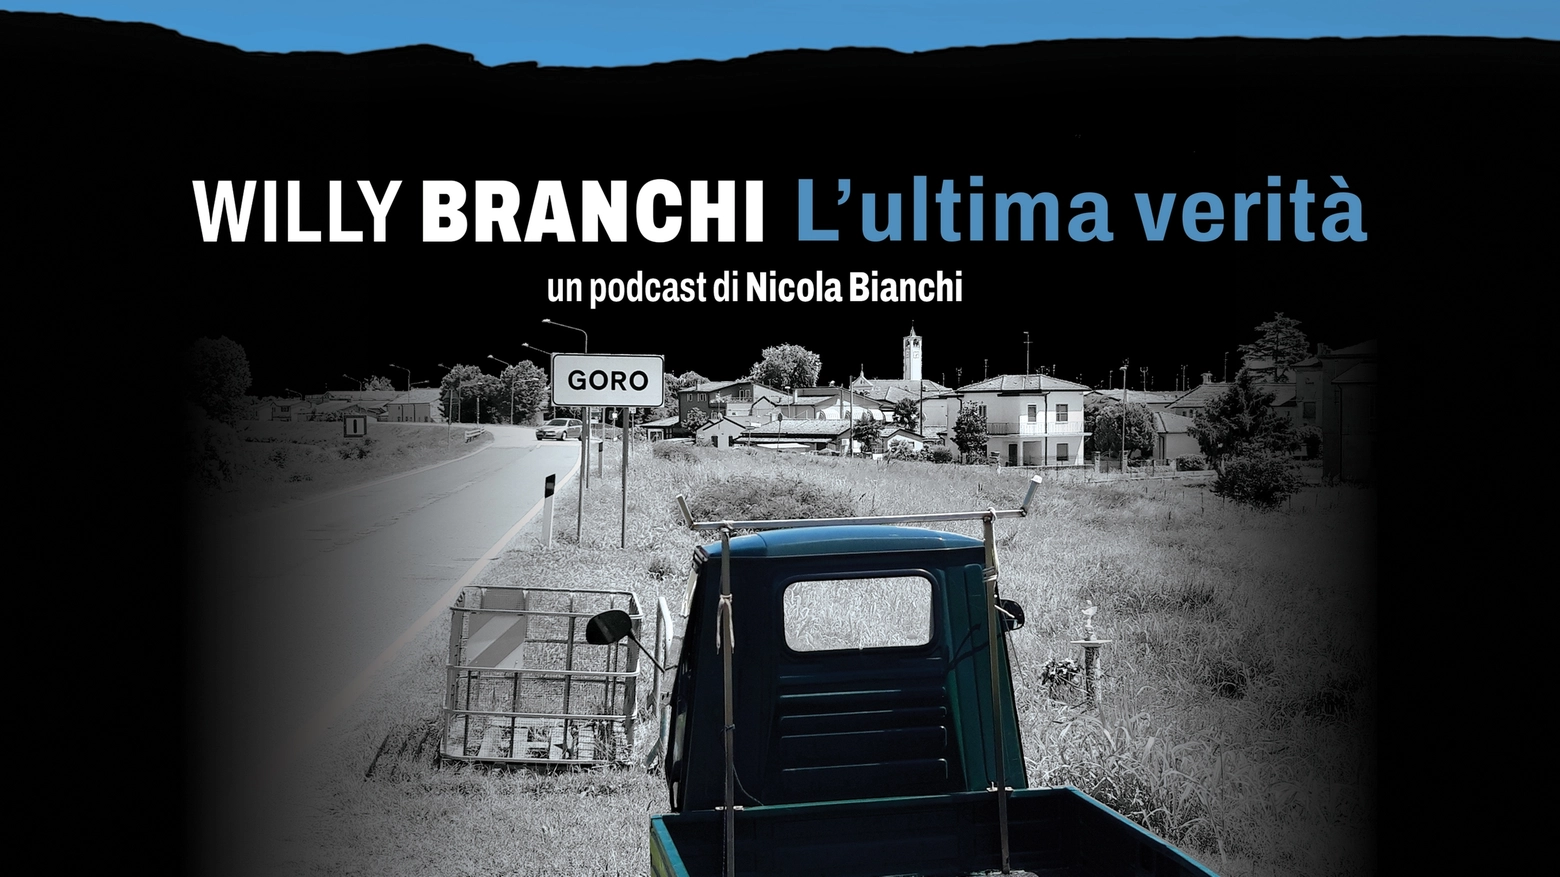 La copertina del podcast curato dal nostro Nicola Bianchi sulla tragica fine di Willy Branchi, ucciso tra il 29 e il 30 settembre del 1988: aveva 18 anni